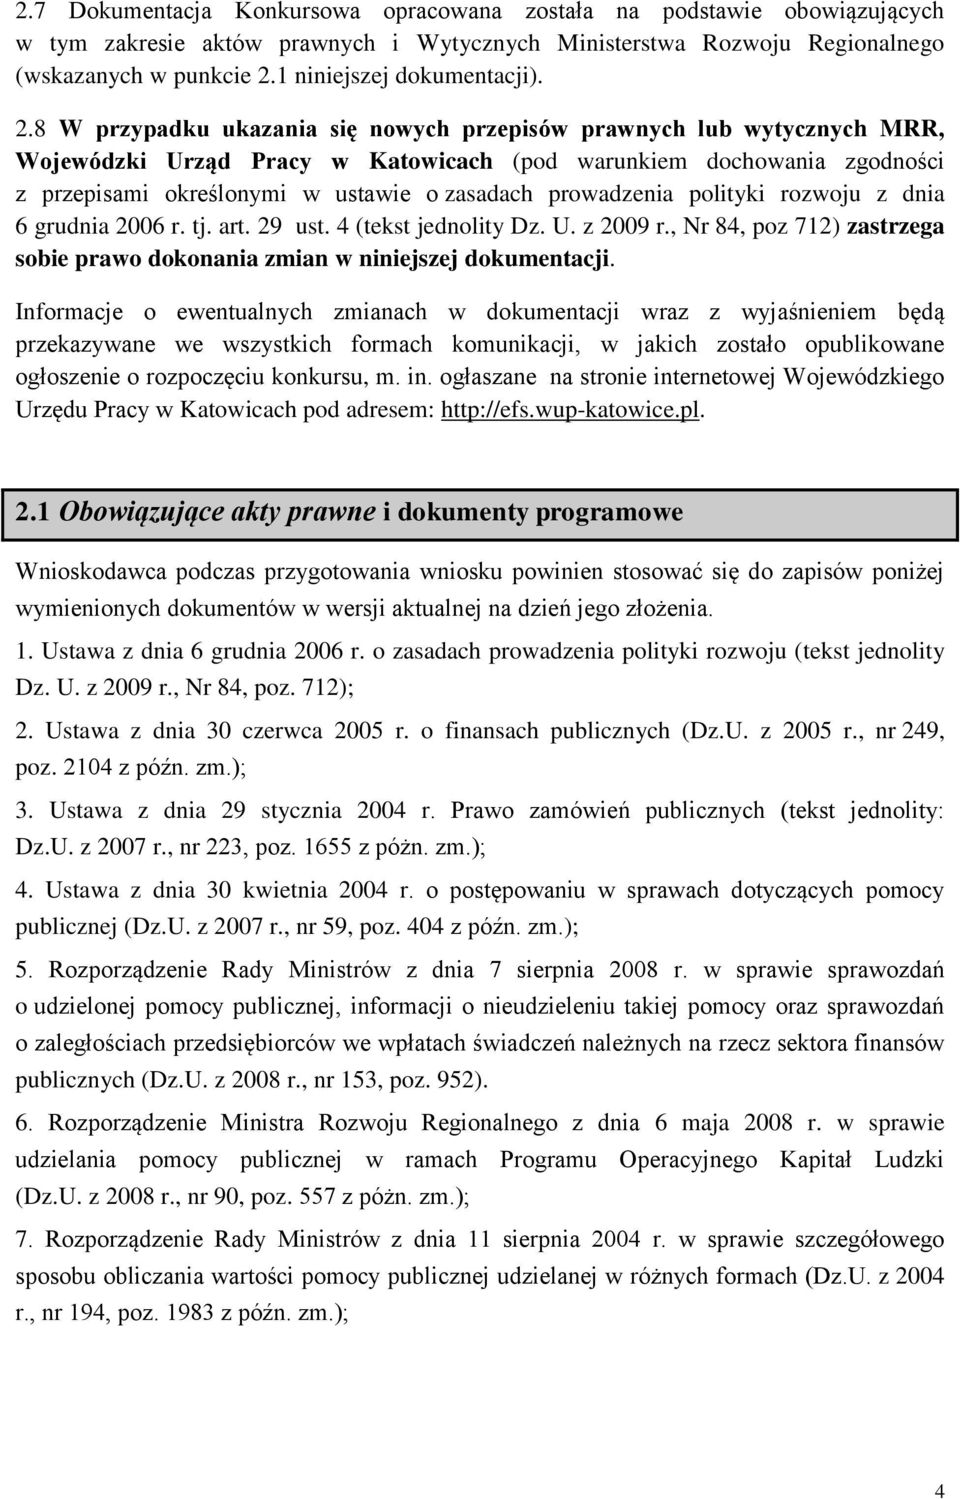 8 W przypadku ukazania się nowych przepisów prawnych lub wytycznych MRR, Wojewódzki Urząd Pracy w Katowicach (pod warunkiem dochowania zgodności z przepisami określonymi w ustawie o zasadach